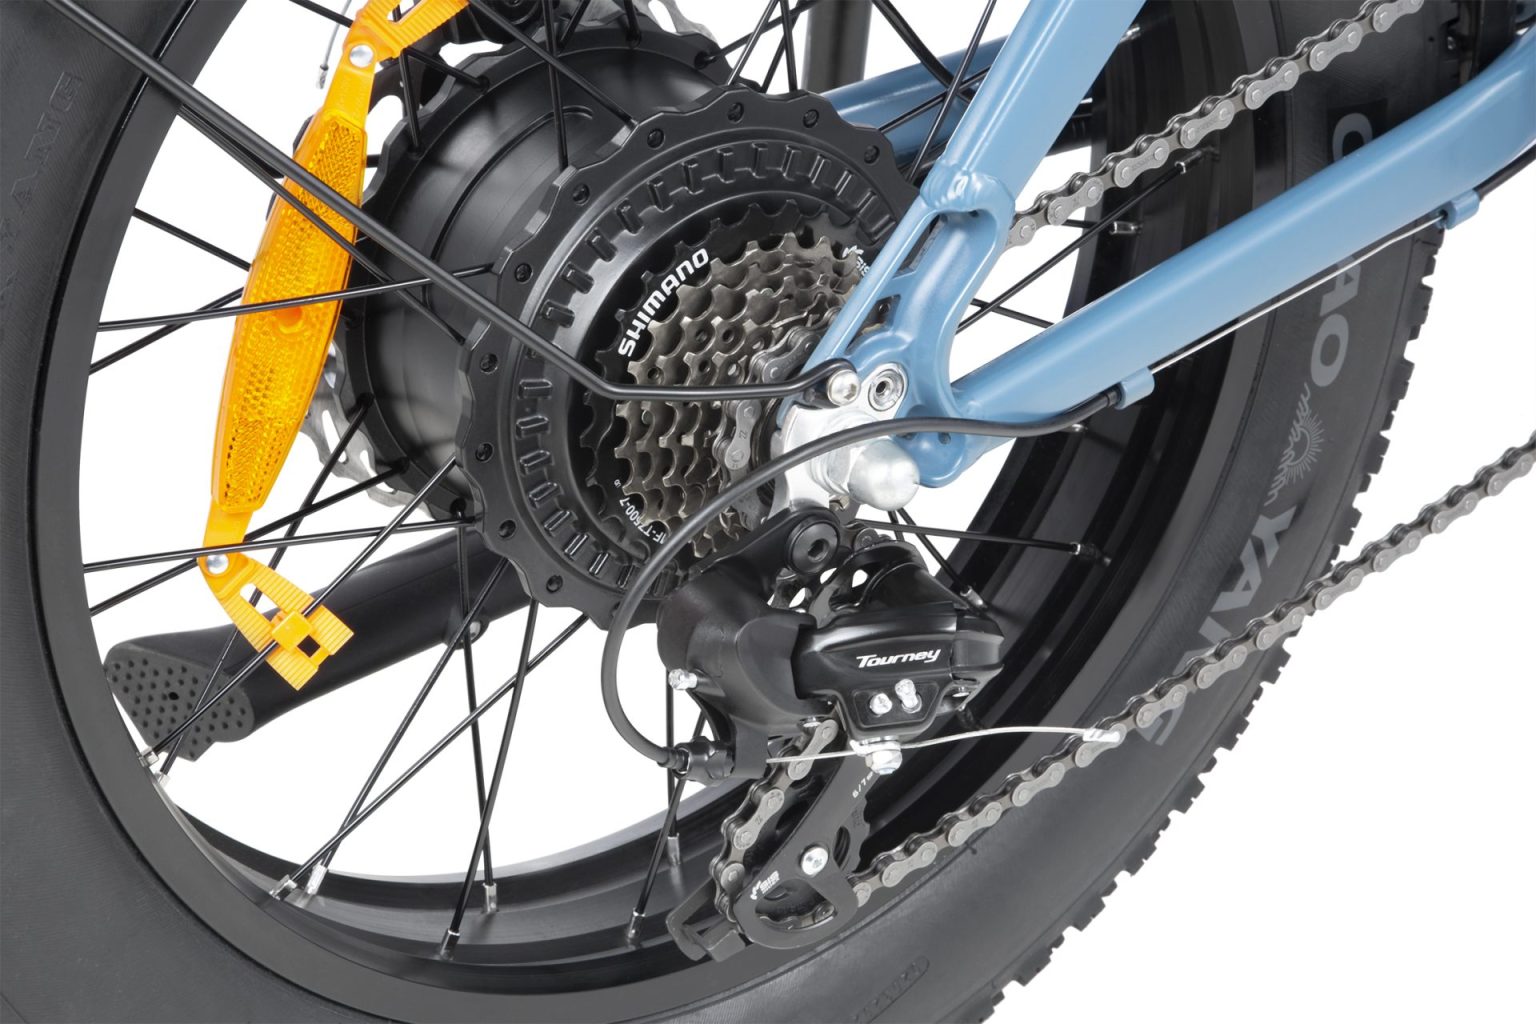 cmacewheel ks26 bici elettriche di seconda mano su ebay ebike pendolari ebike faro motan bici elettrica fat tire triciclo elettrico